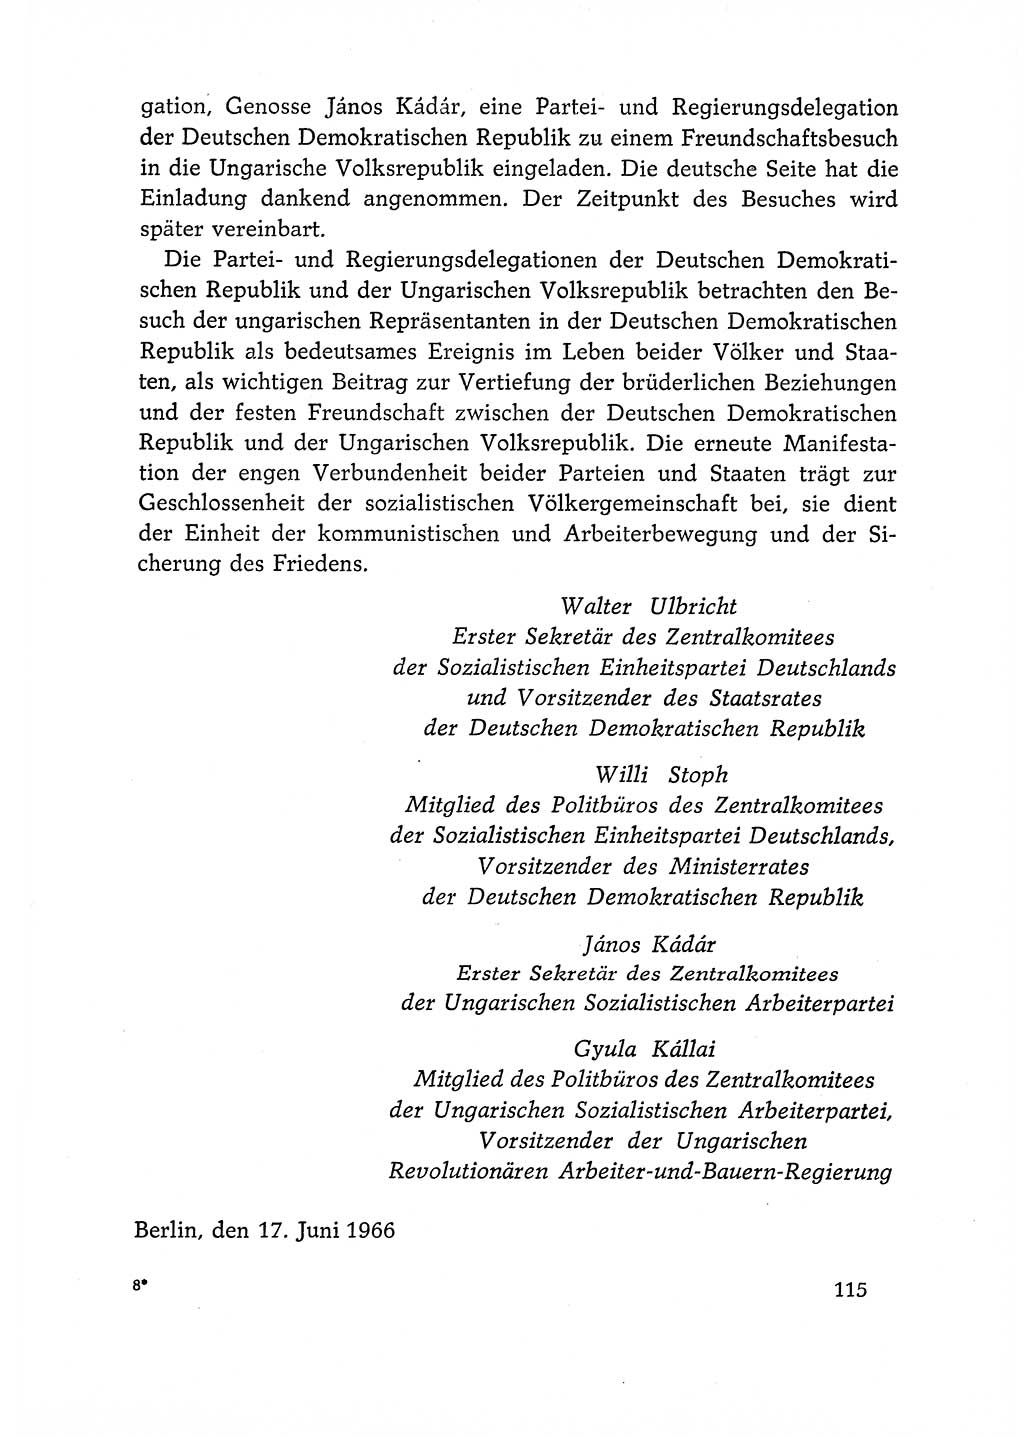 Dokumente der Sozialistischen Einheitspartei Deutschlands (SED) [Deutsche Demokratische Republik (DDR)] 1966-1967, Seite 115 (Dok. SED DDR 1966-1967, S. 115)